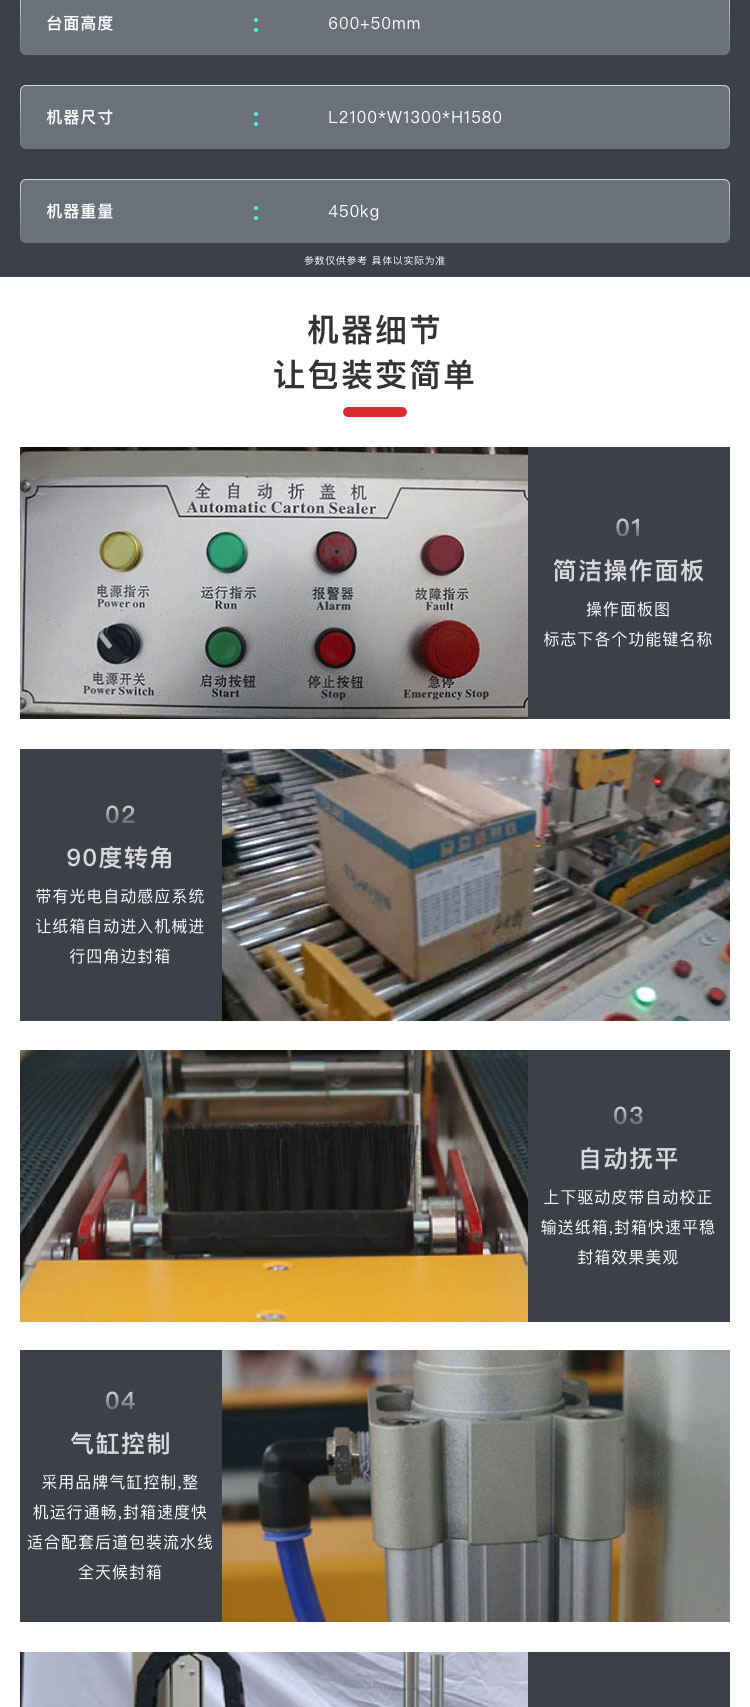 上海智能包装设备专业厂家